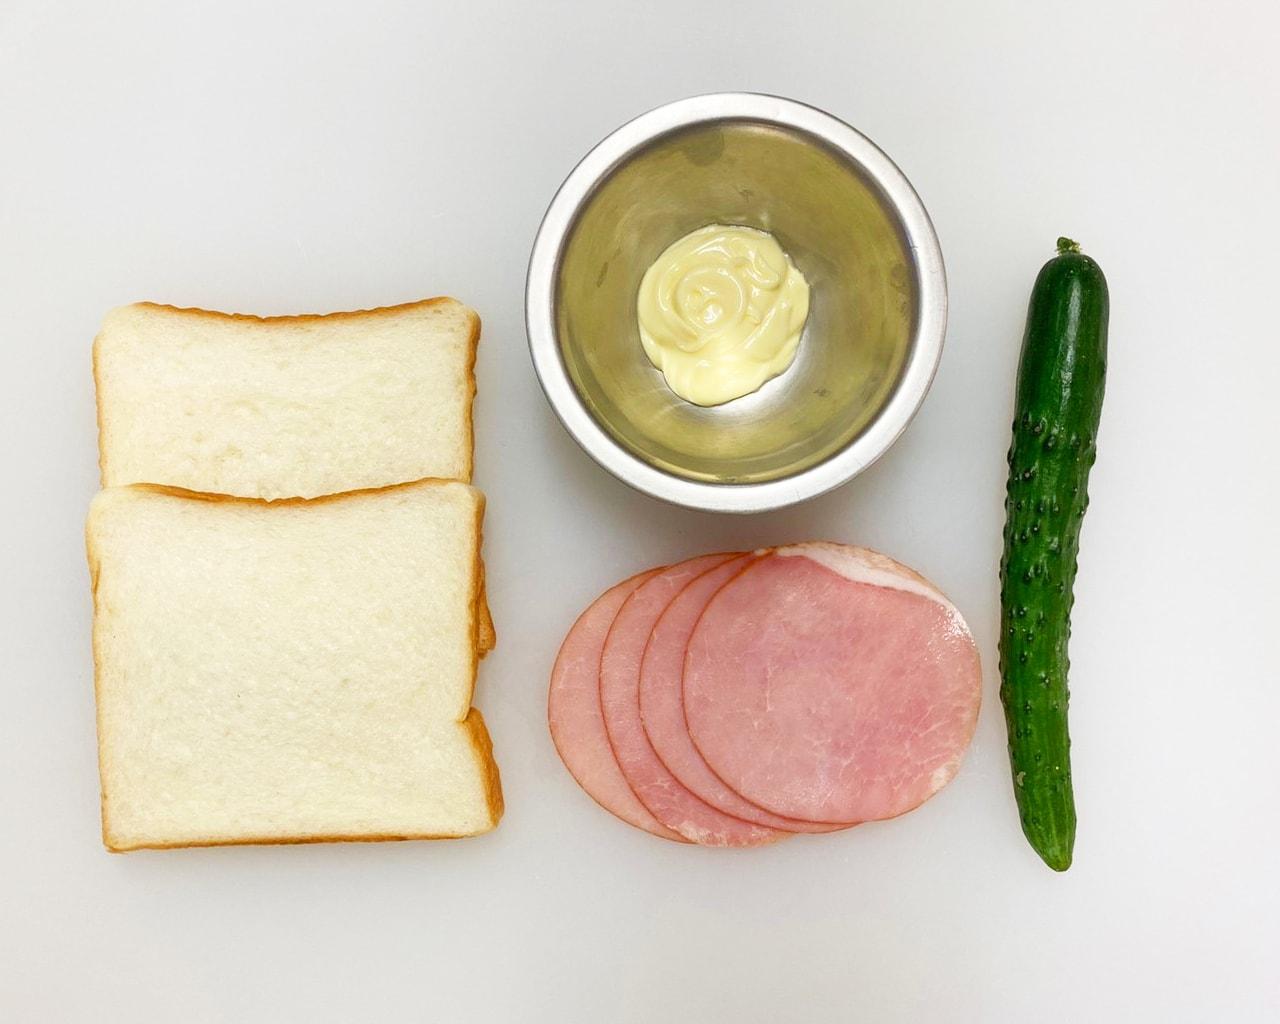 The食パンのサンドイッチ ハム きゅうり 株式会社シベール